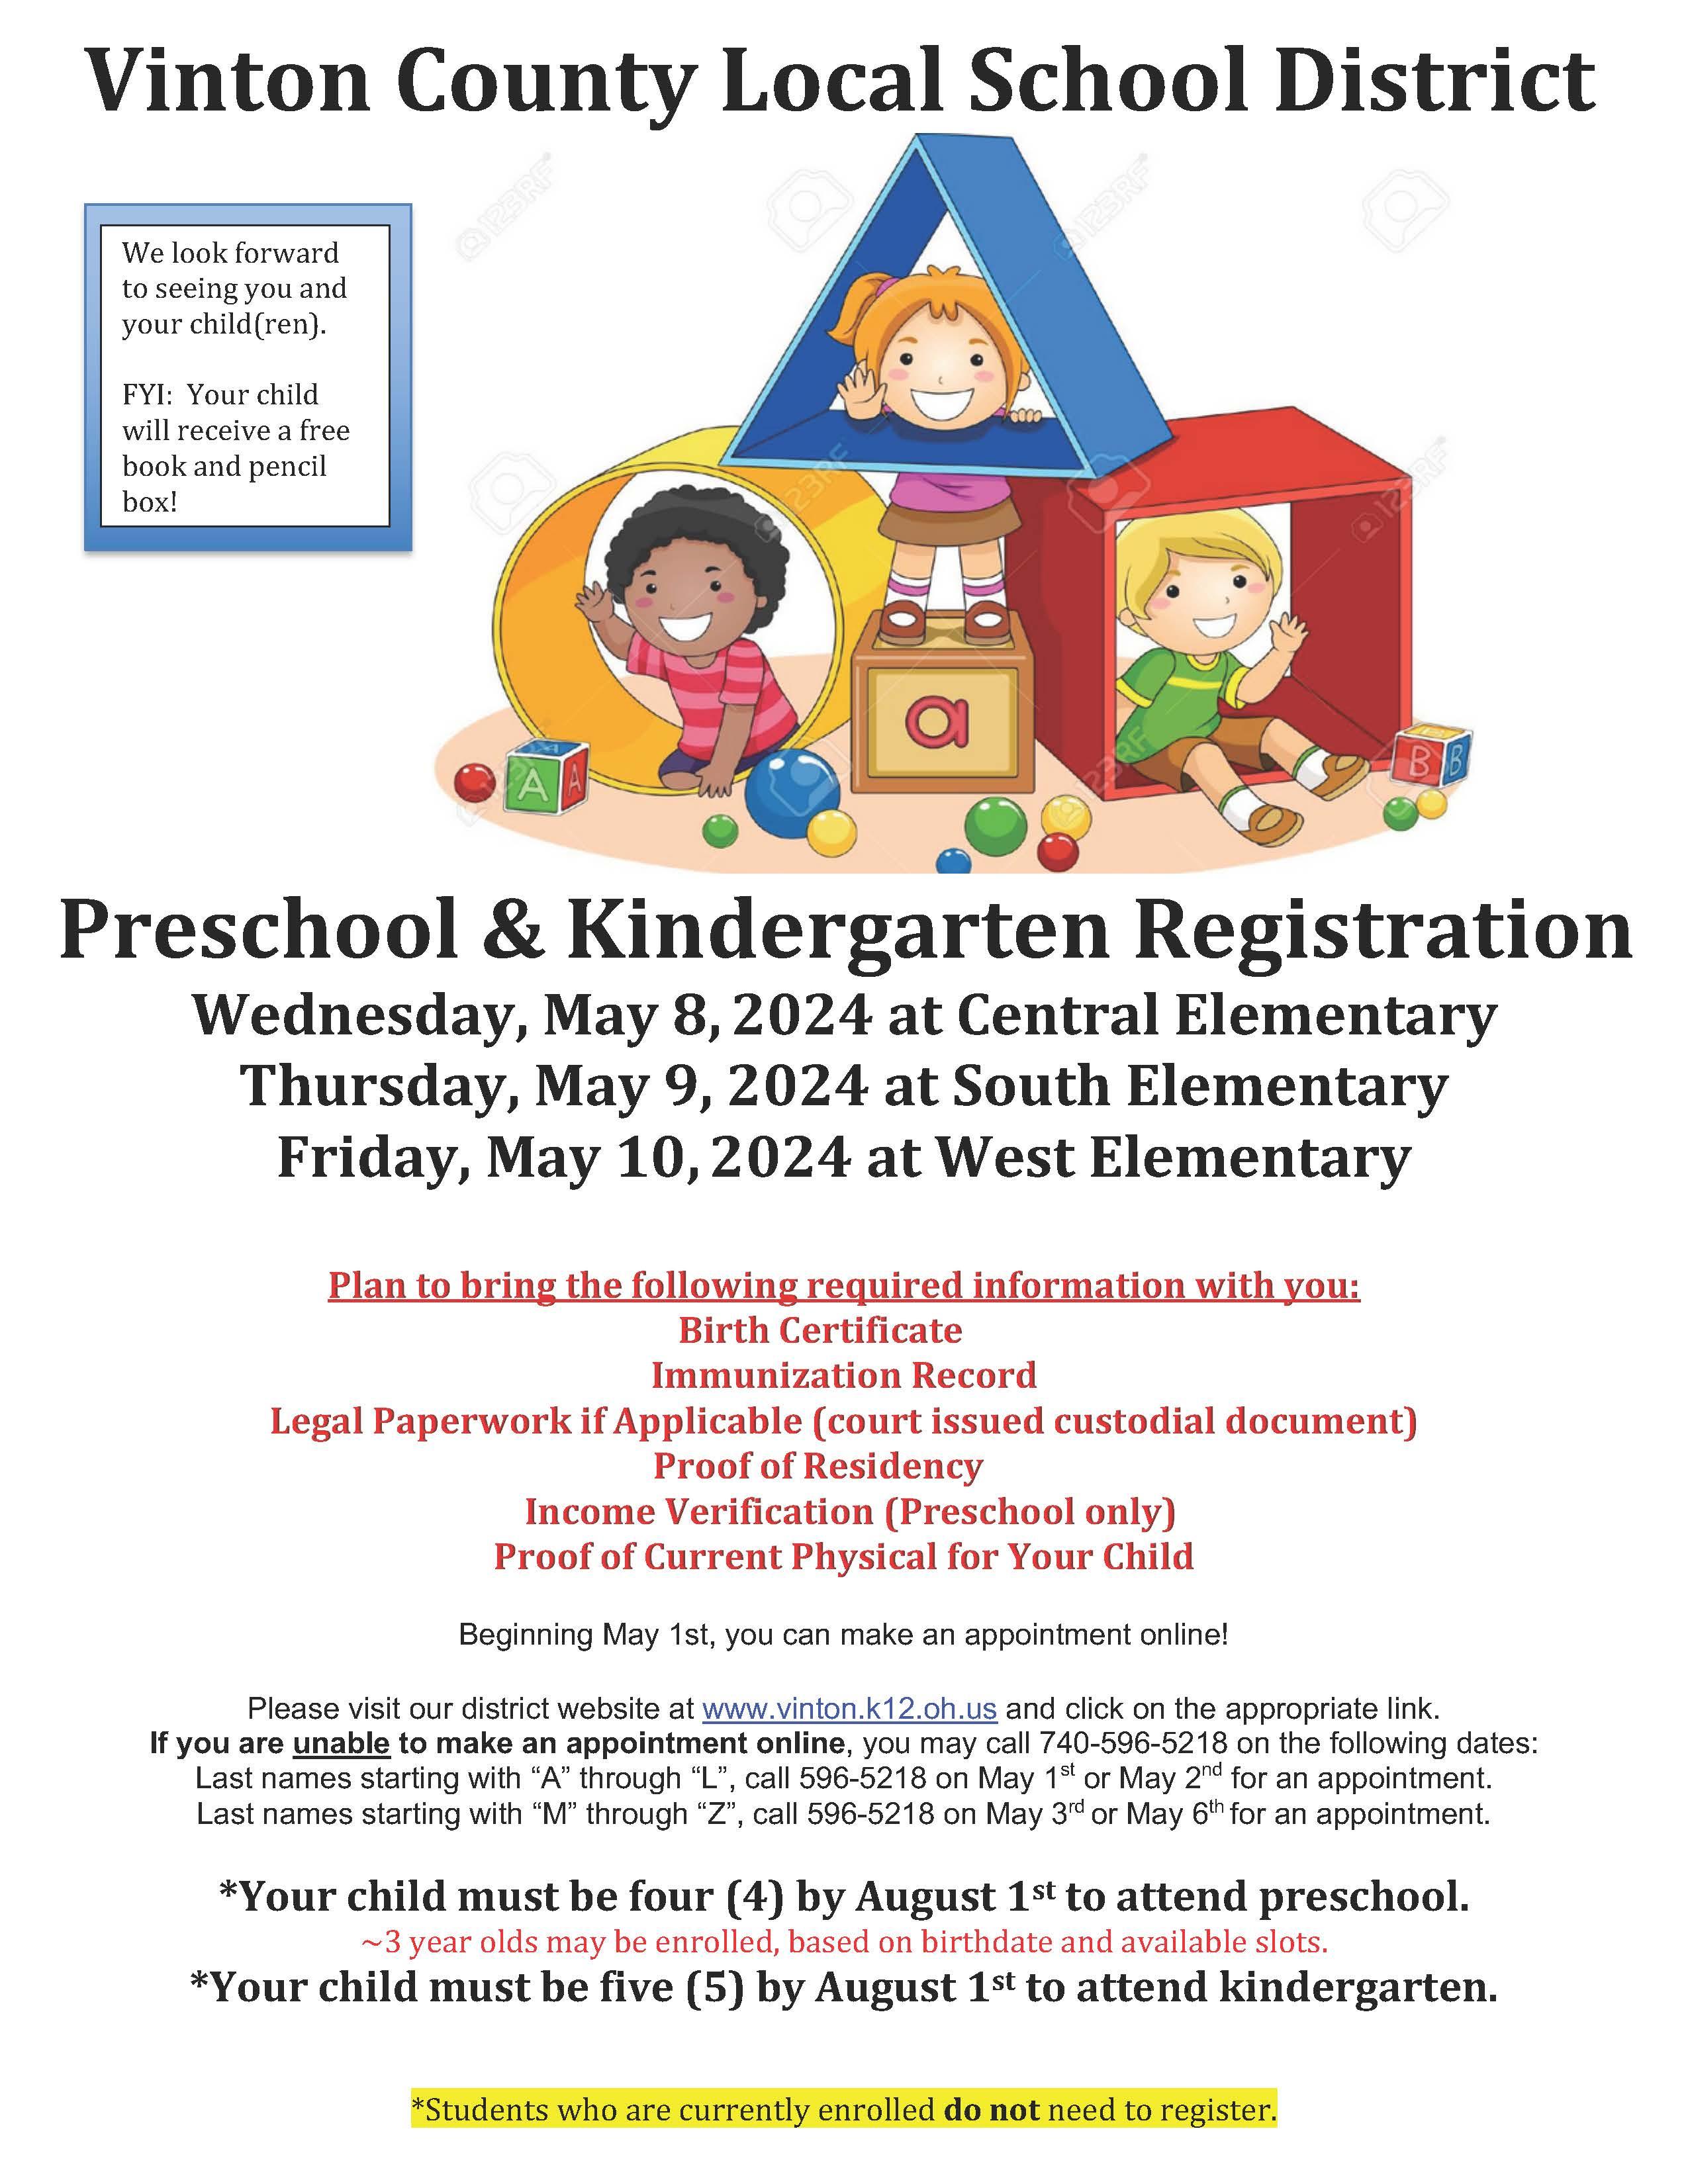 Preschool and Kindergarten Registration Flyer